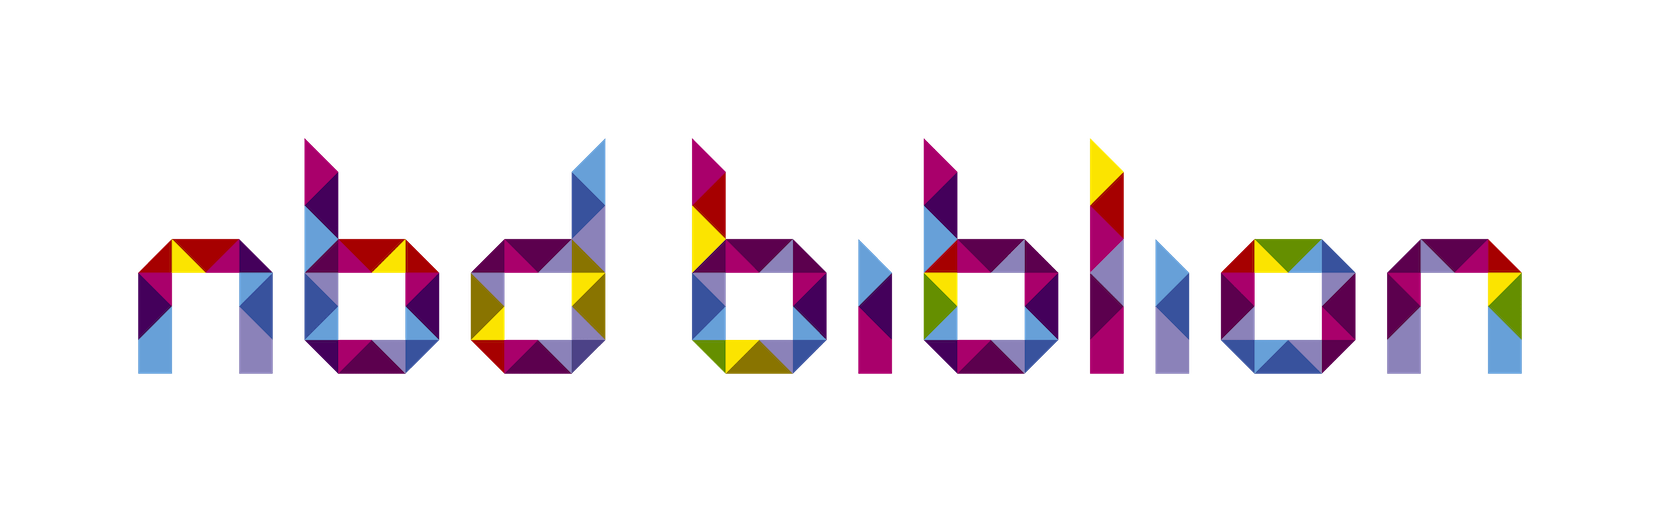 NBD Biblion logo